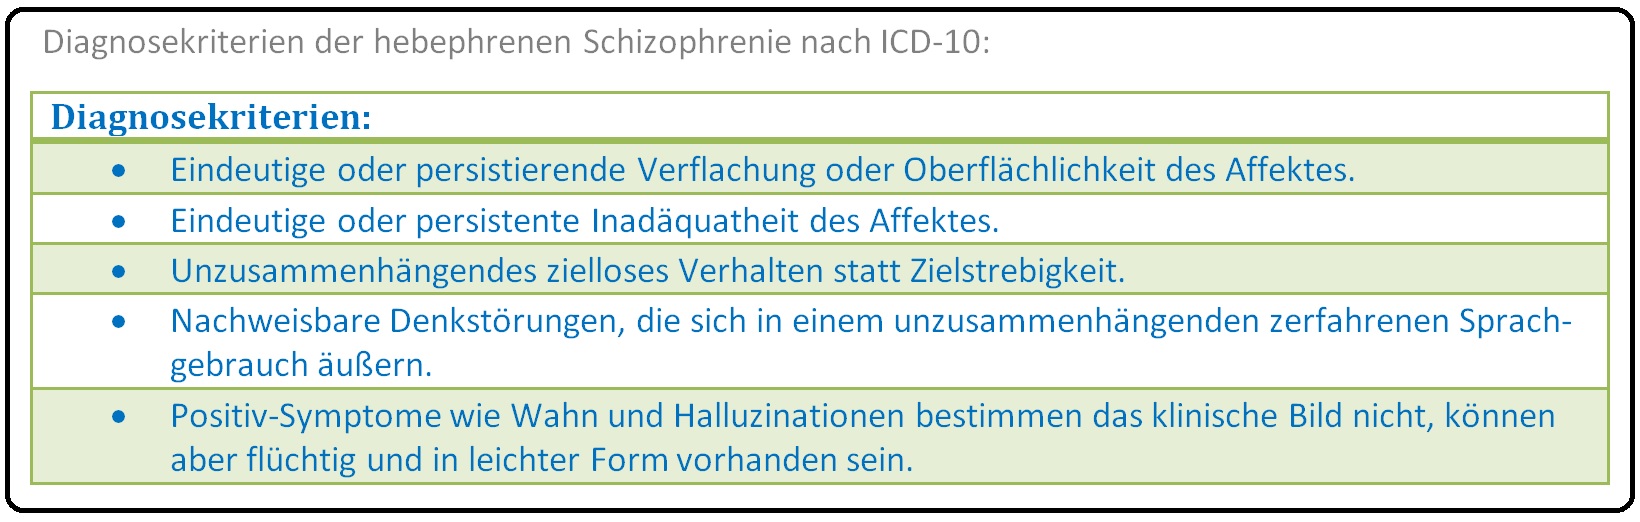 593 Diagnosekriterien der hebephrenen Schizophrenie nach ICD 10